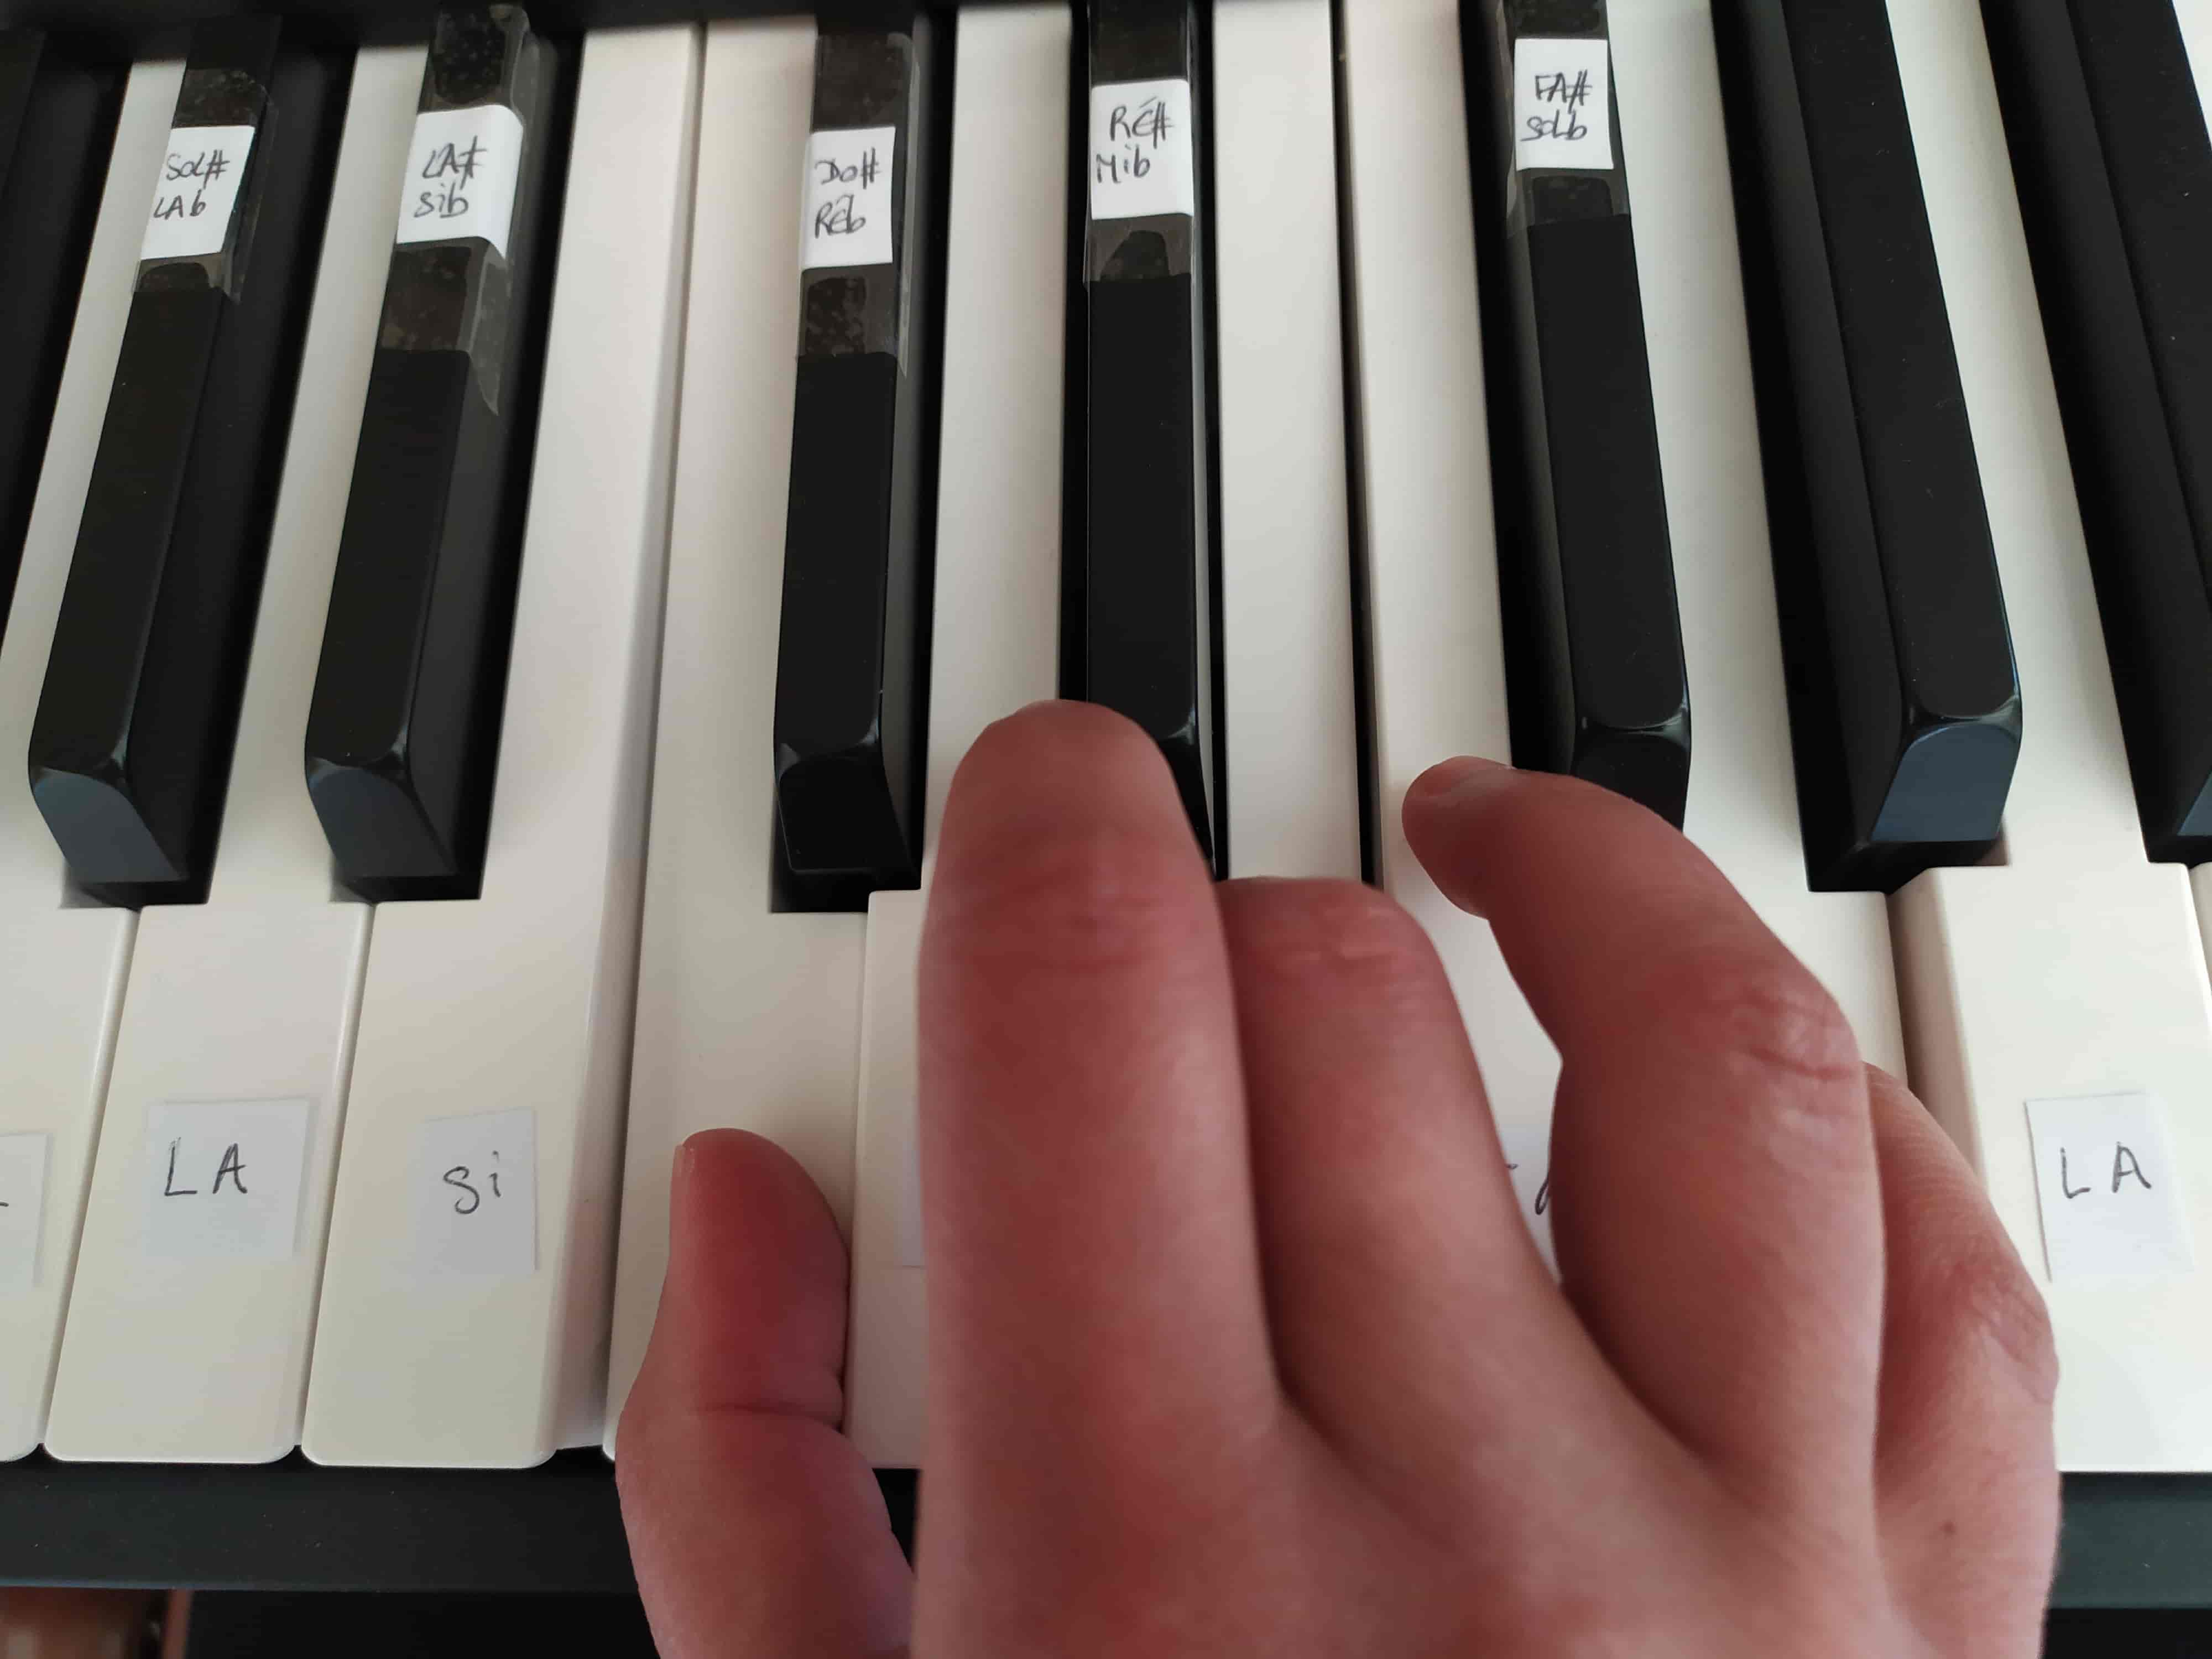 Autocollants pour clavier de Piano 88 touches, étiquettes de notes